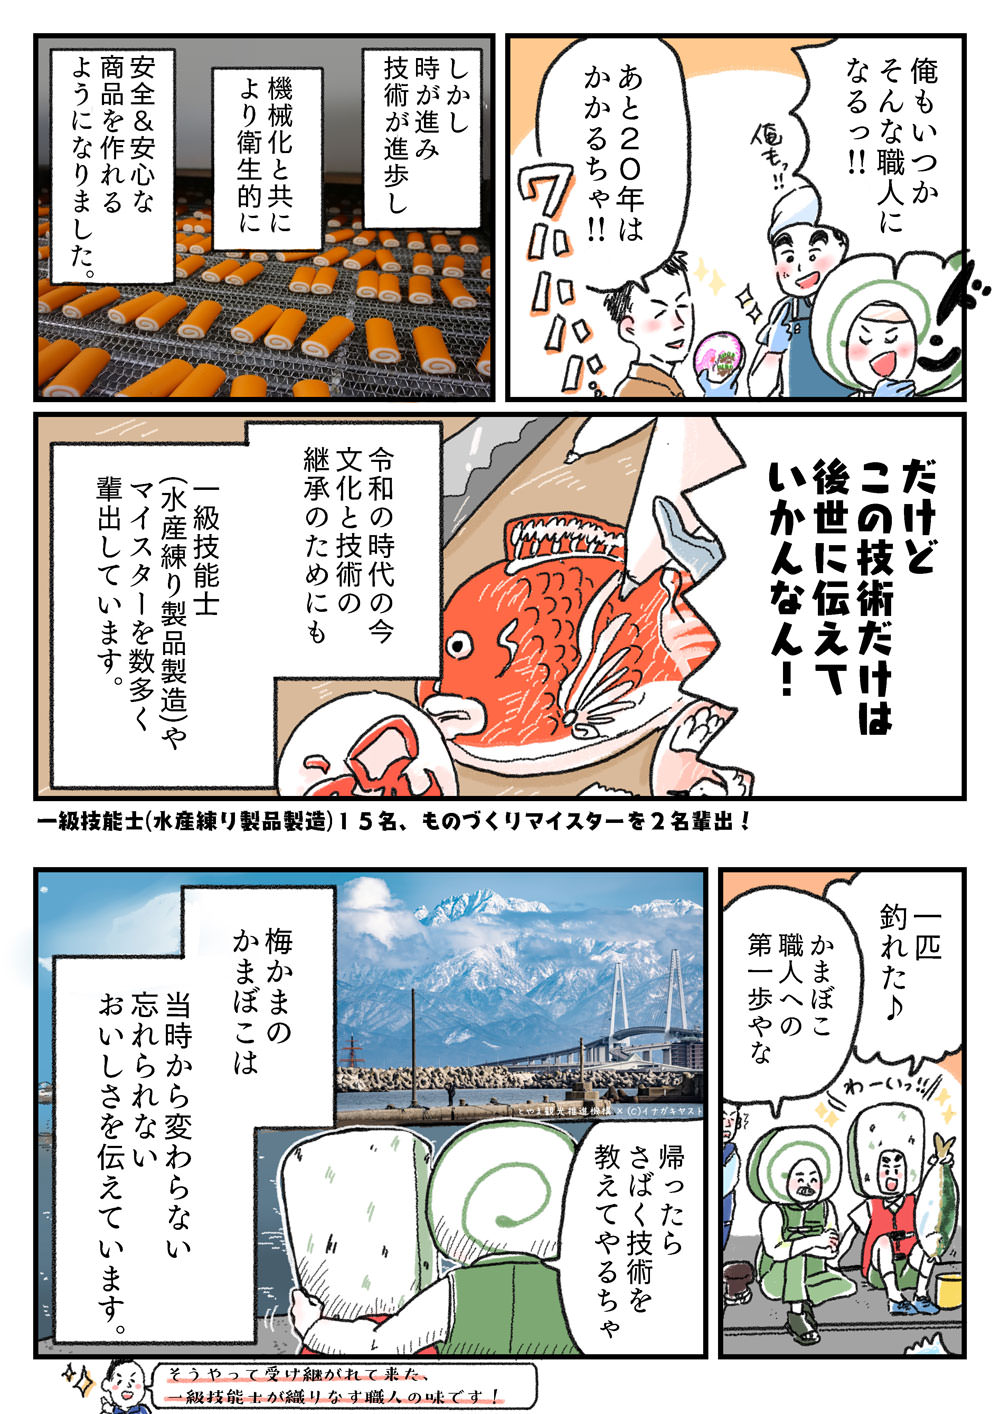 ウメカマンガ(巻) 10本気旅目 一級技能士による富山のかまぼこ文化と技術継承